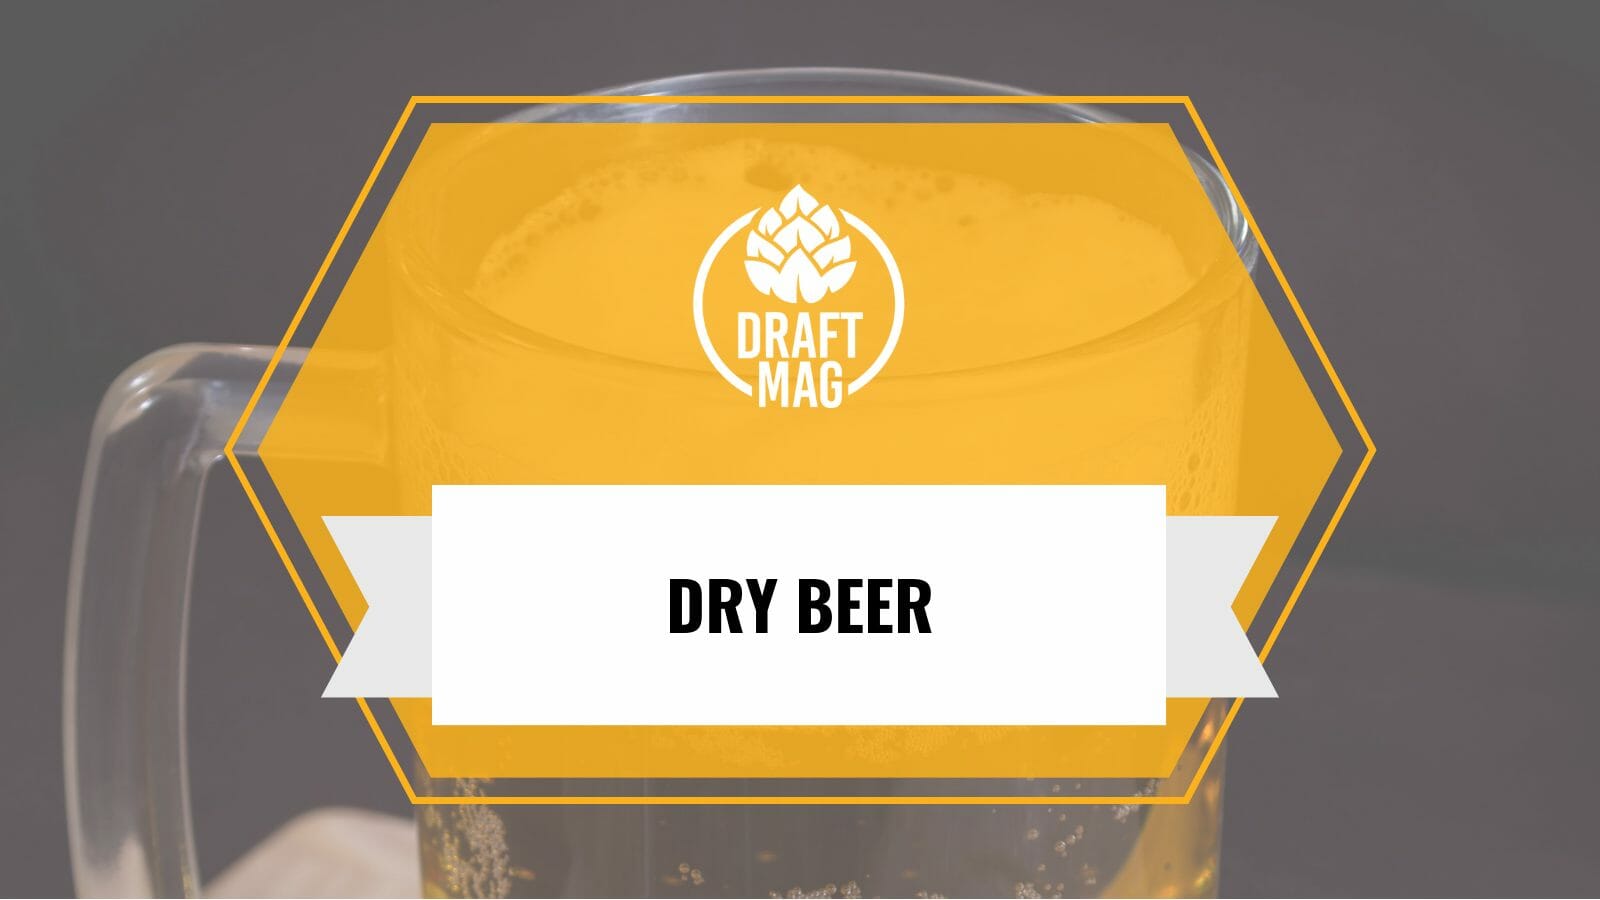 Dry beer guide